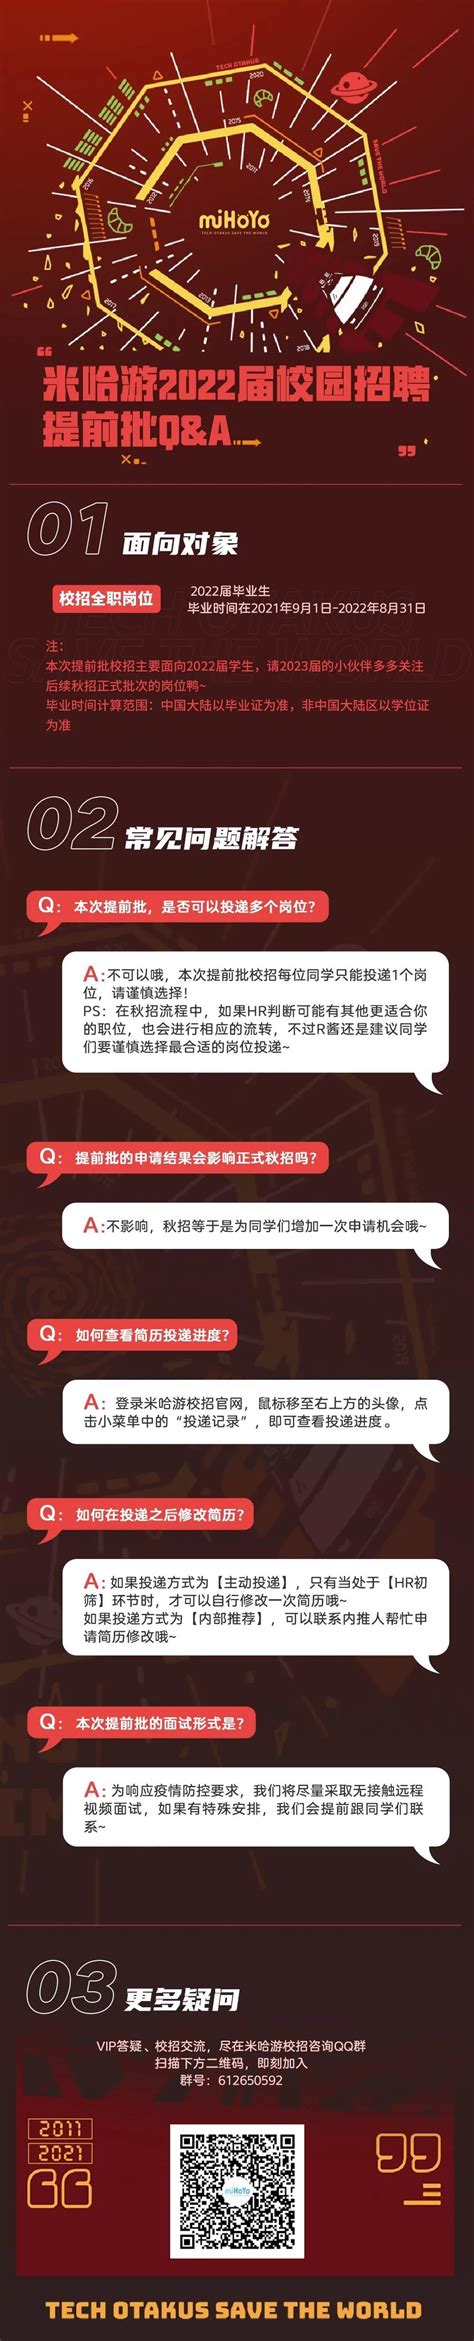 上海米哈游网络科技股份有限公司2020校园招聘_上海校园招聘